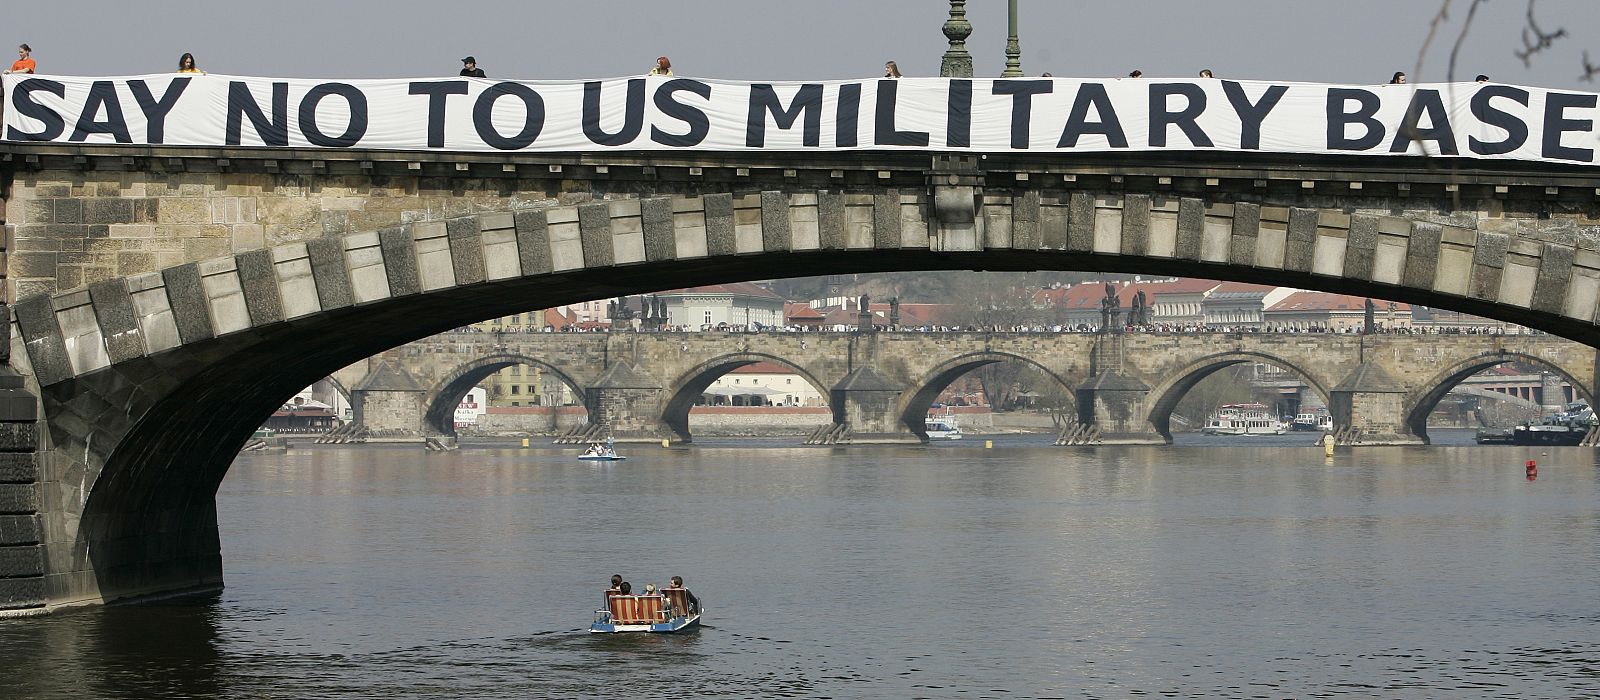 Un activista instala una pancarta contra el escudo antisimisiles de EE.UU. en un puente de Praga.